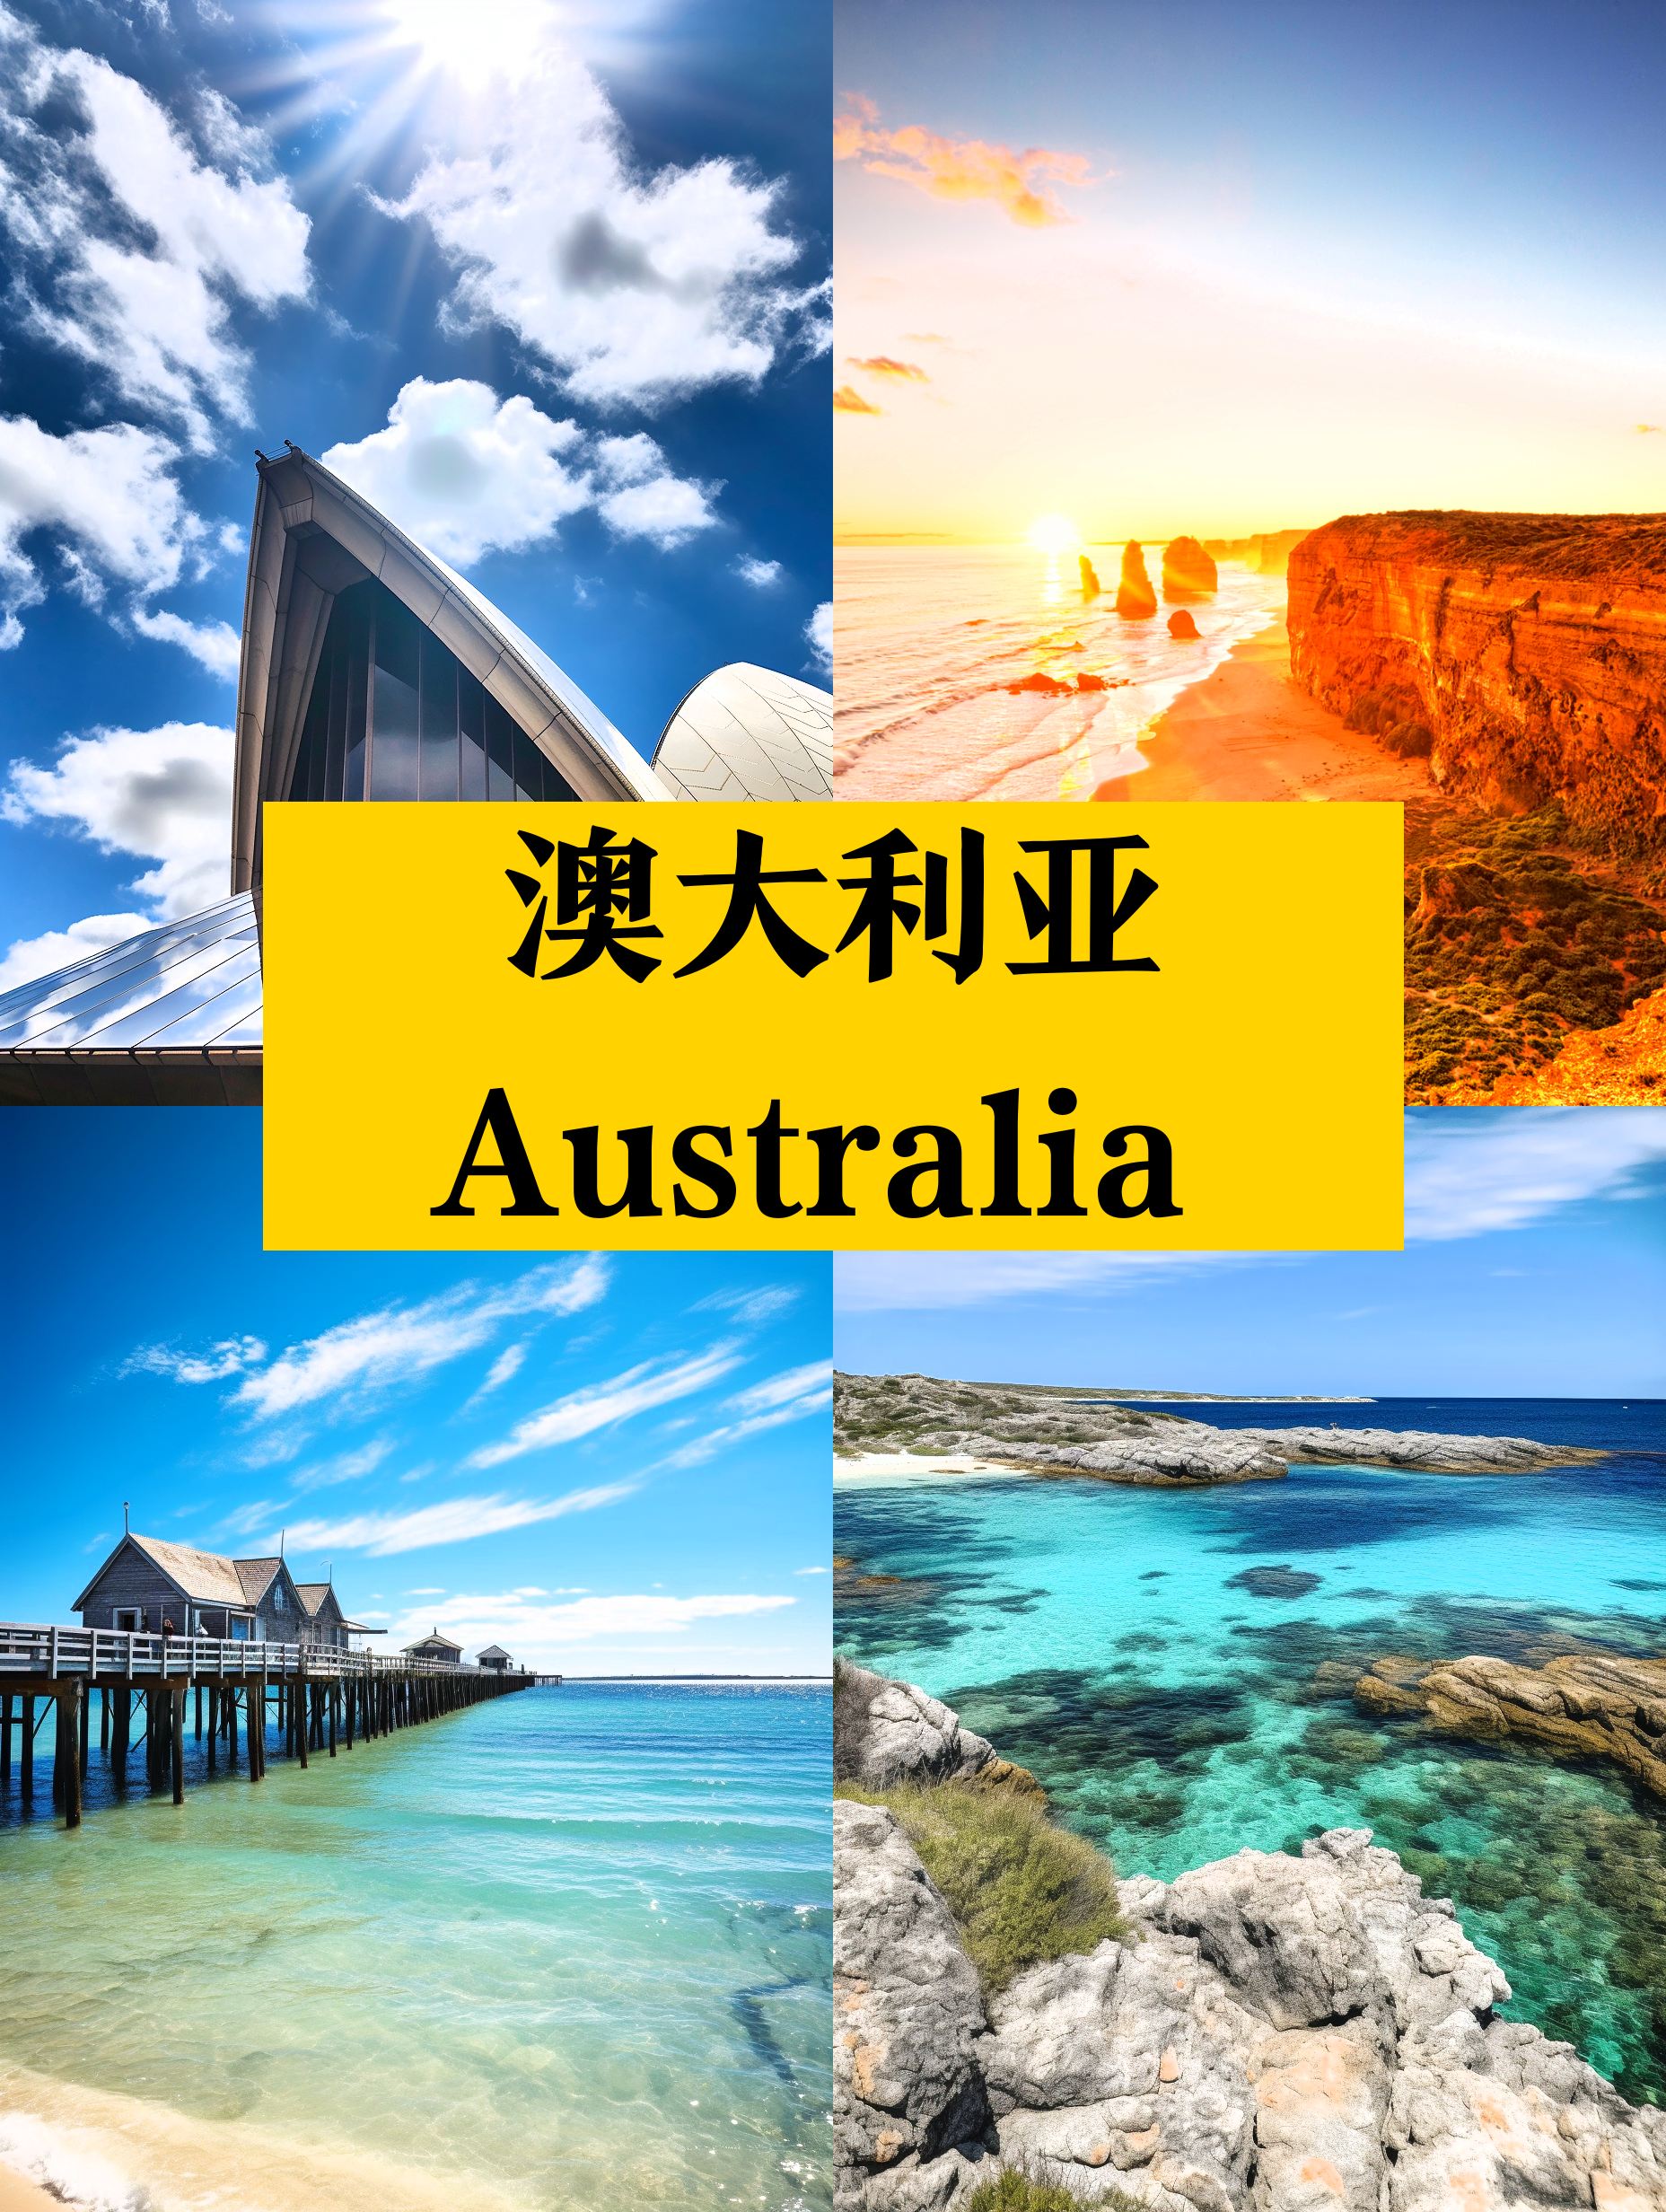 澳大利亚7日游👍 看完你就想去❗